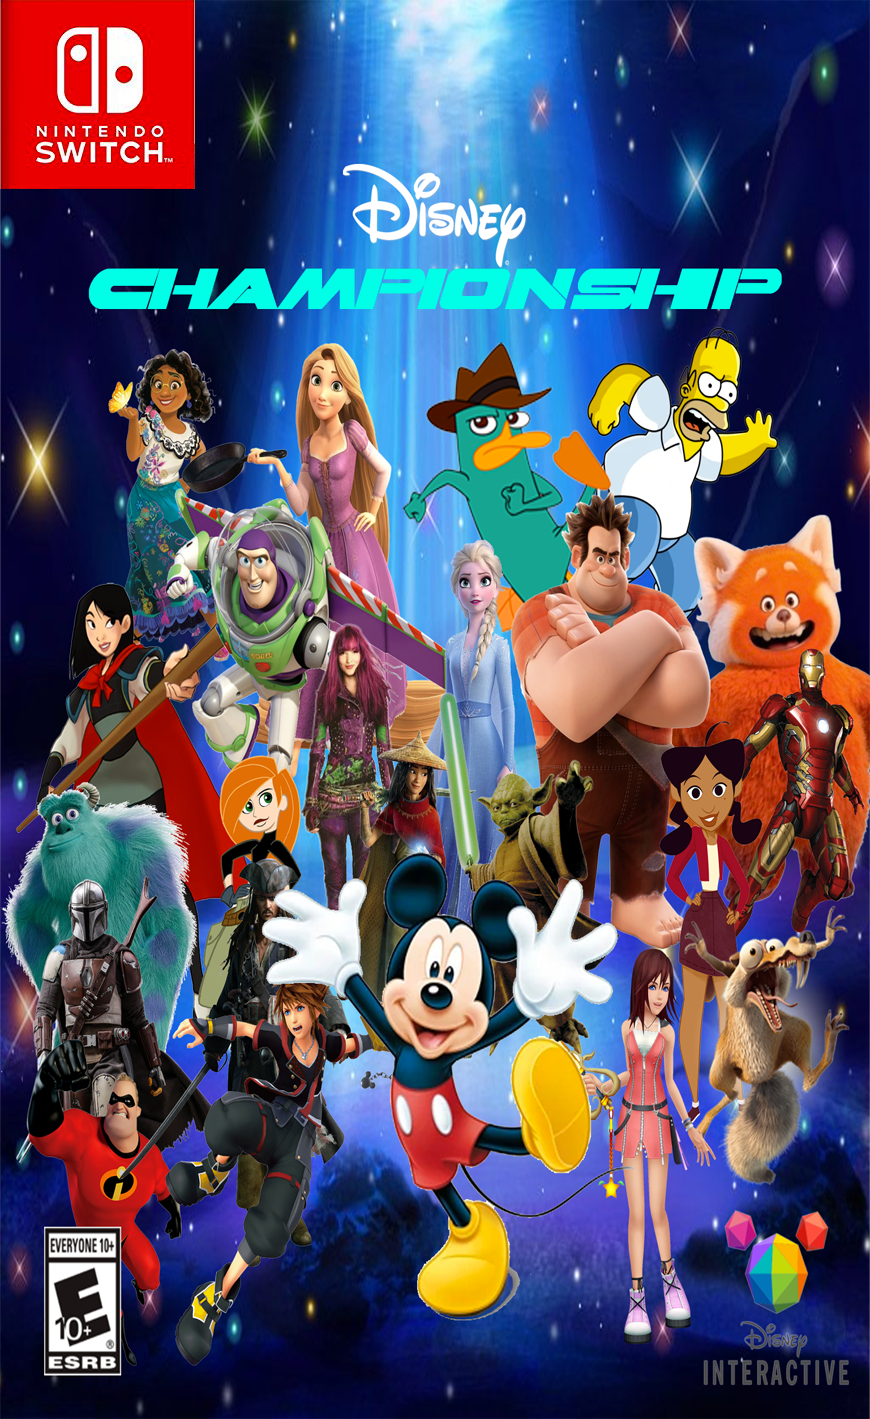 Super Smash Bros. Crossover Ultimate, Video Game Fanon Wiki